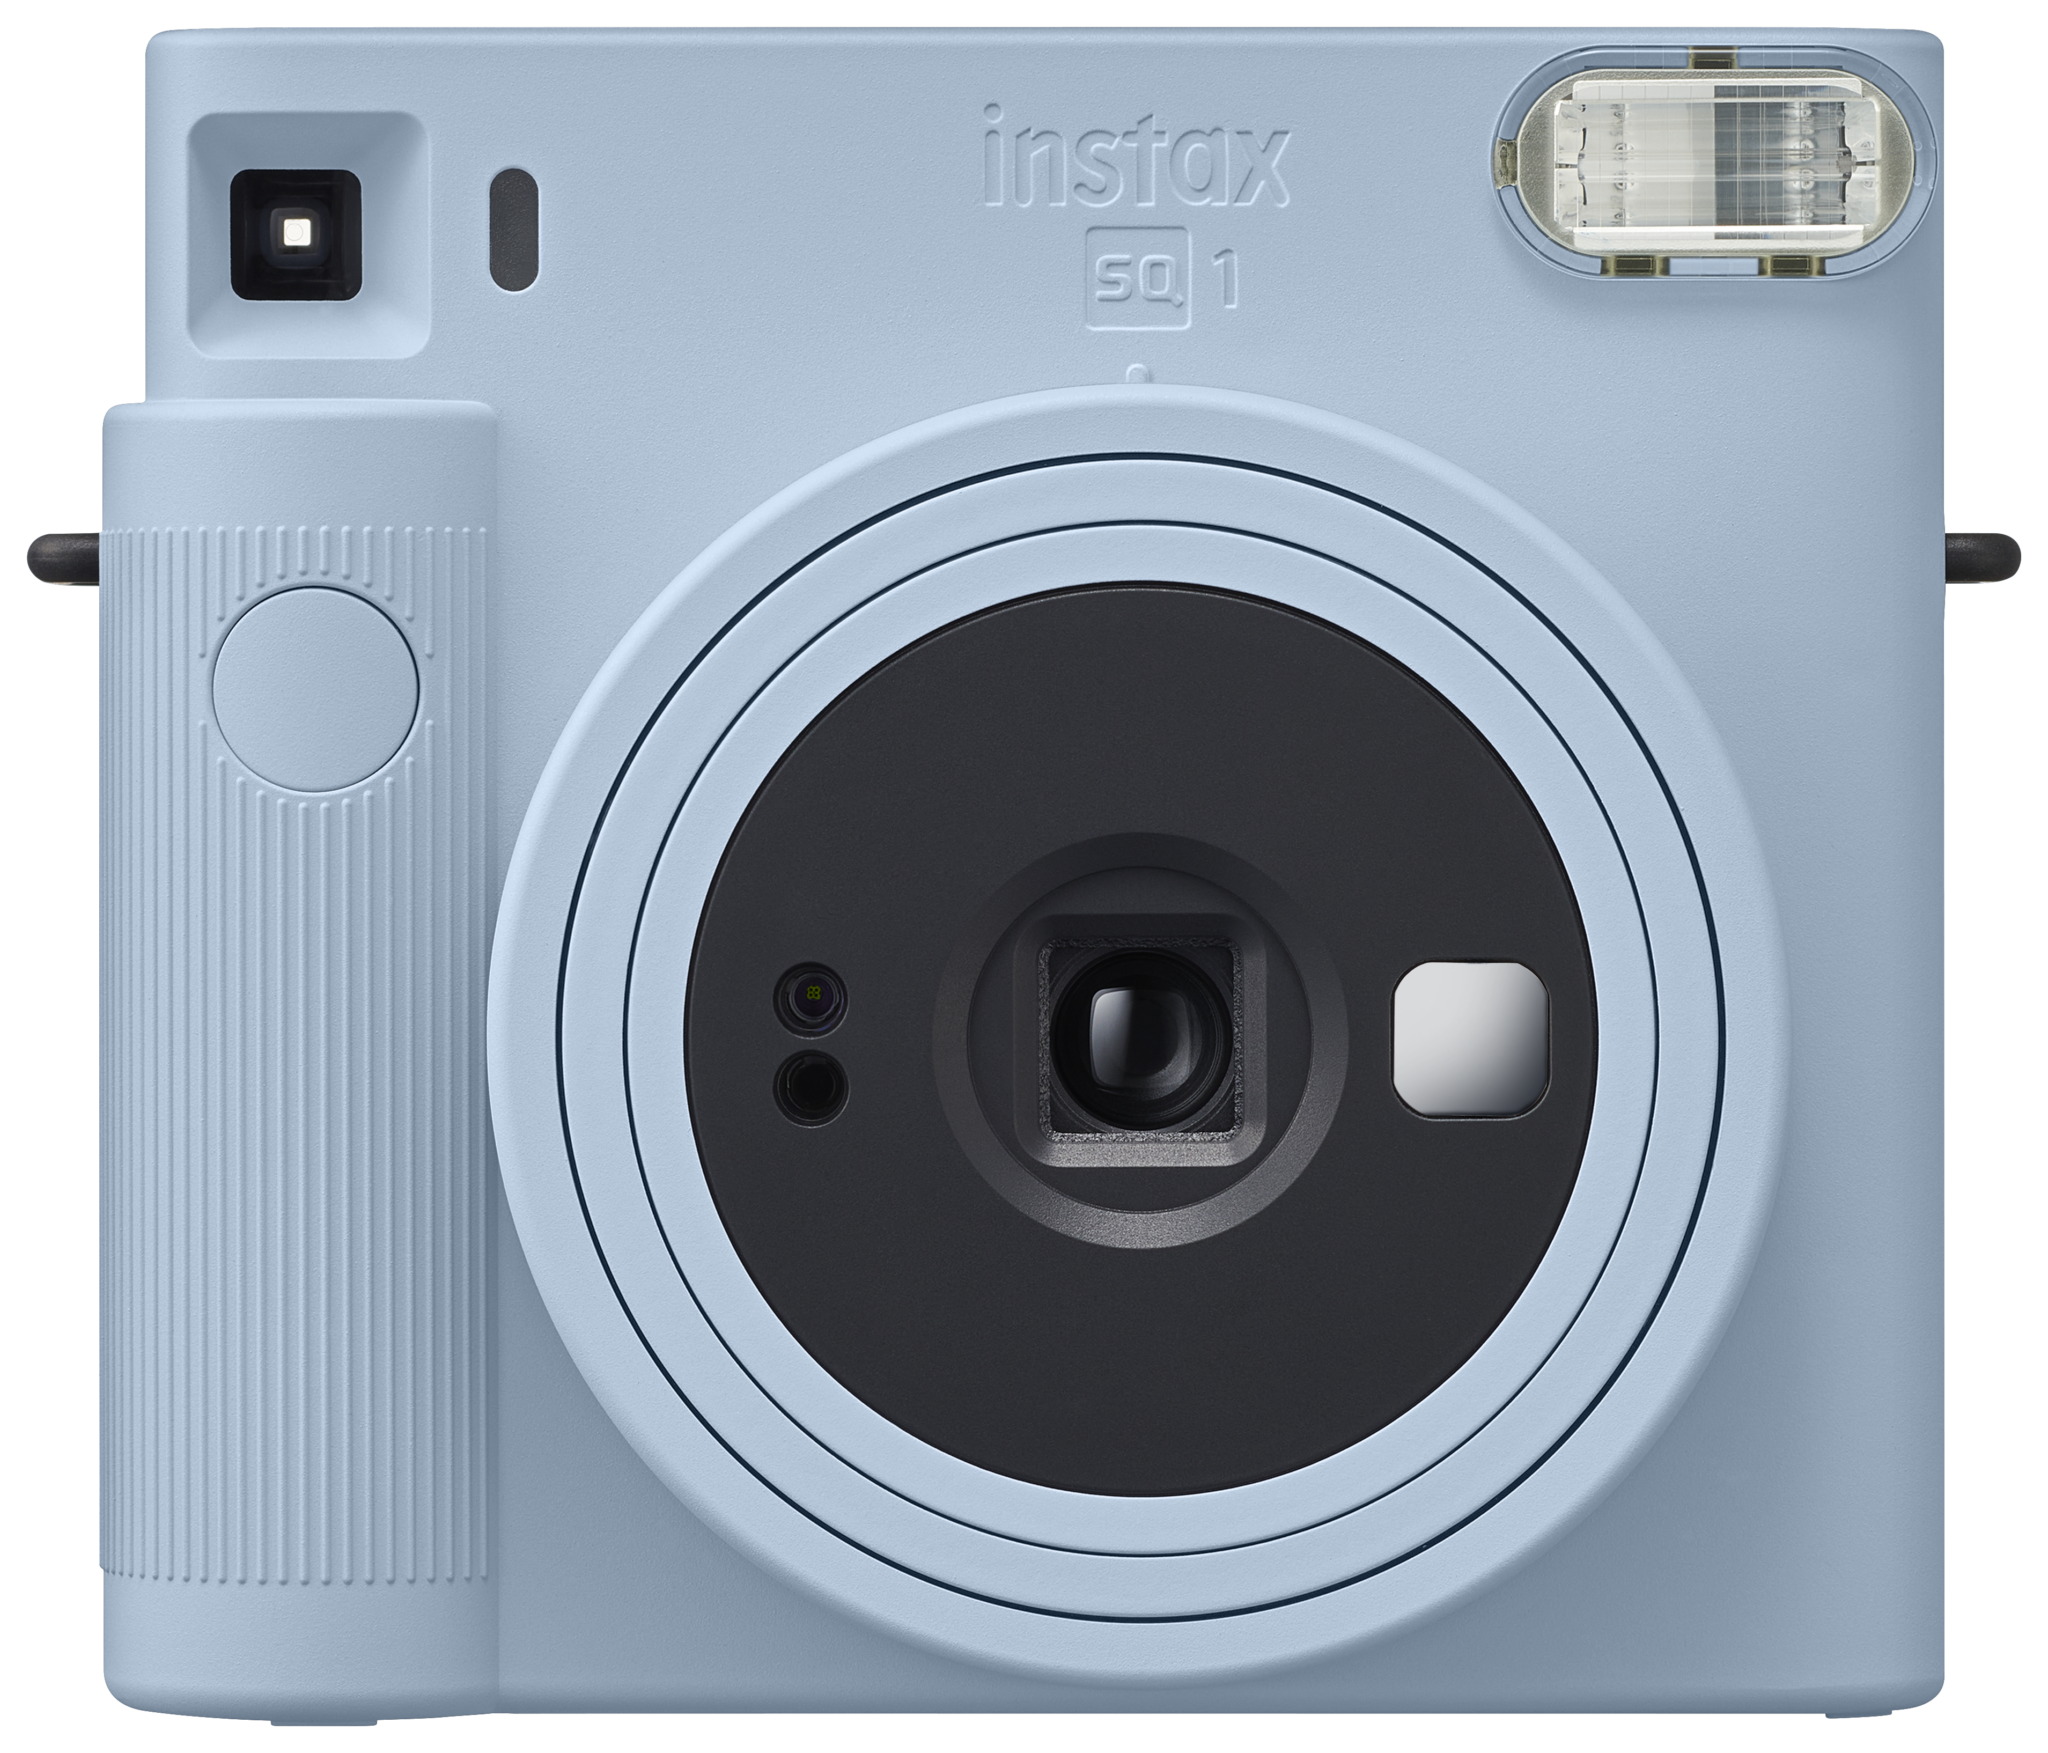 Instax Square Sq1 Glacier Blue Instant Camera